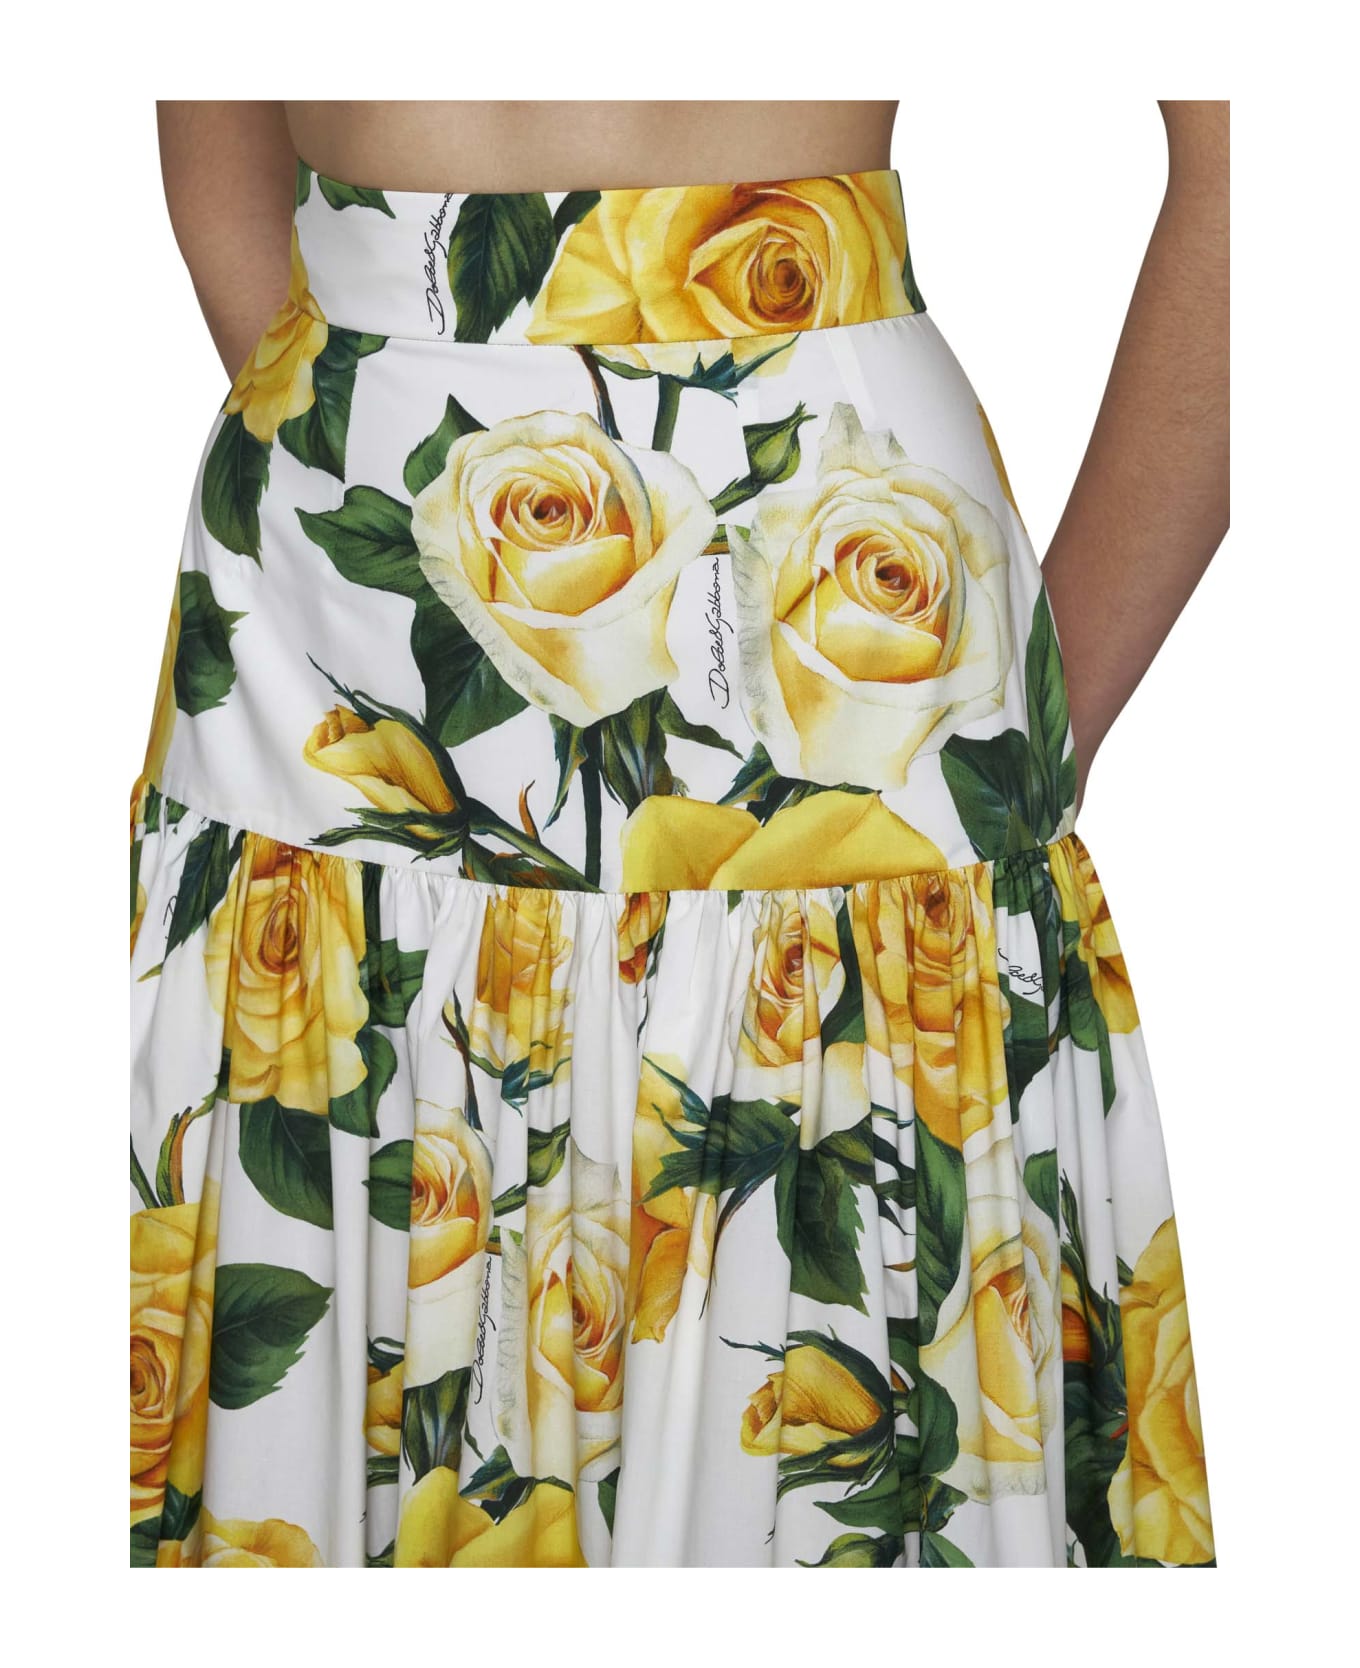 Dolce & Gabbana Pleated Midi Skirt - Rose gialle f.b.nat スカート